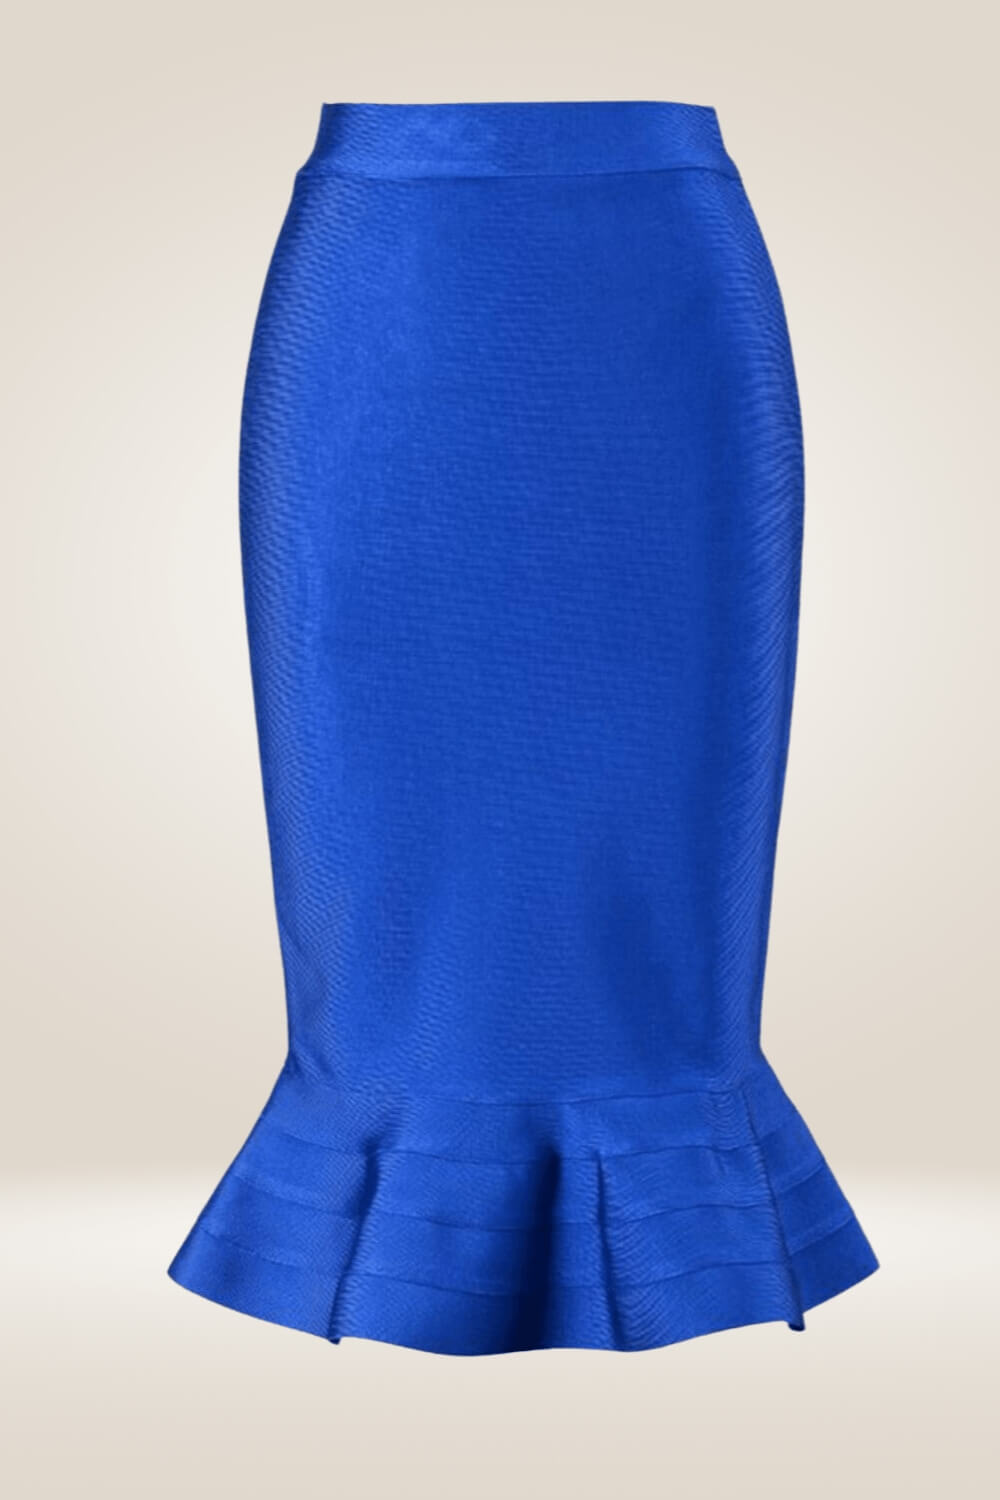 Bodycon Mermaid Blue Midi Skirt - TGC Boutique - Bodycon skirt